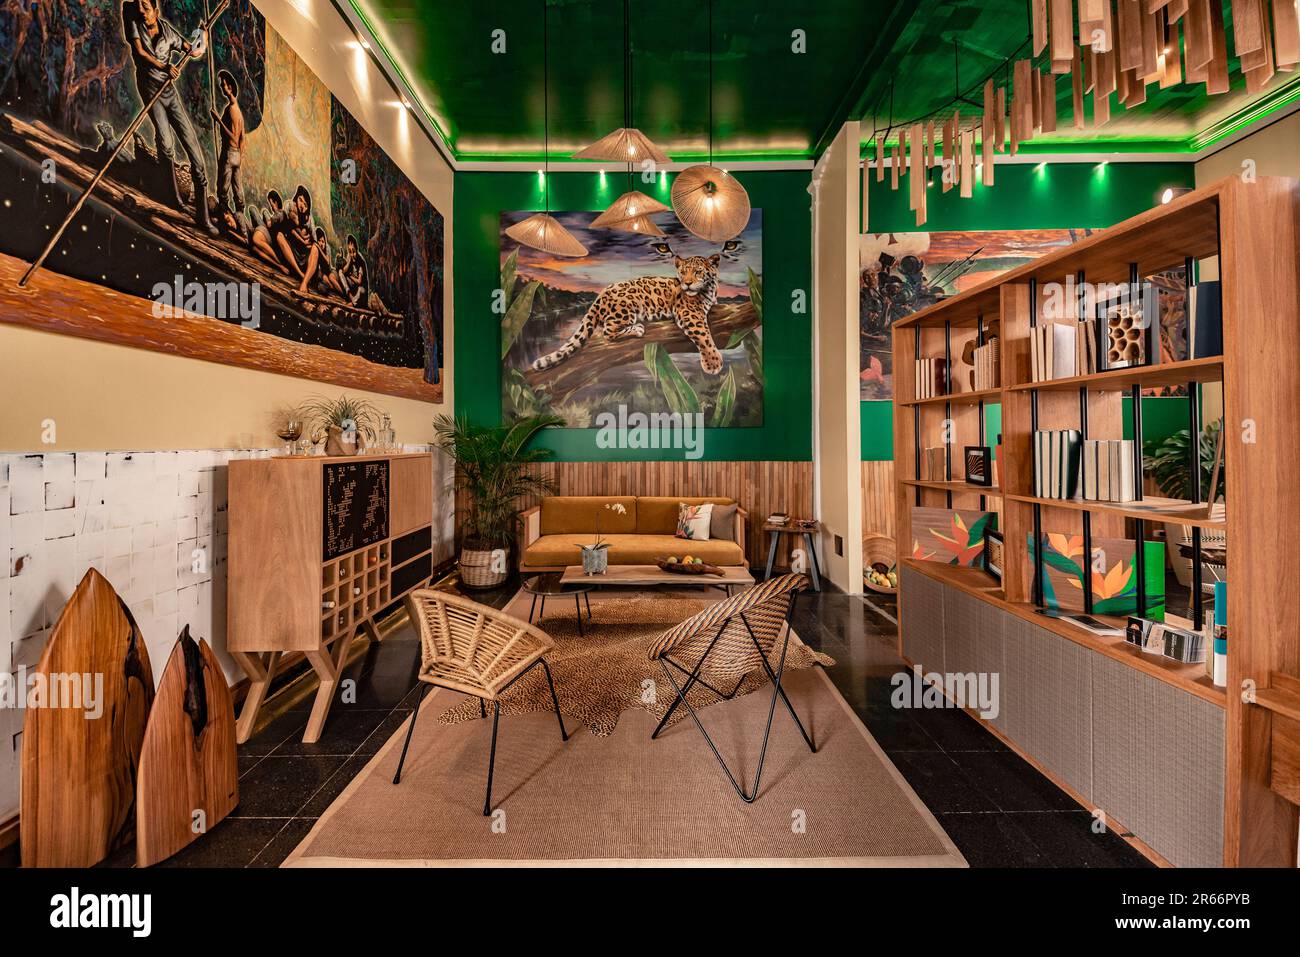 sala y biblioteca con acabados rusticos inspirados  en la selva peruana Stock Photo